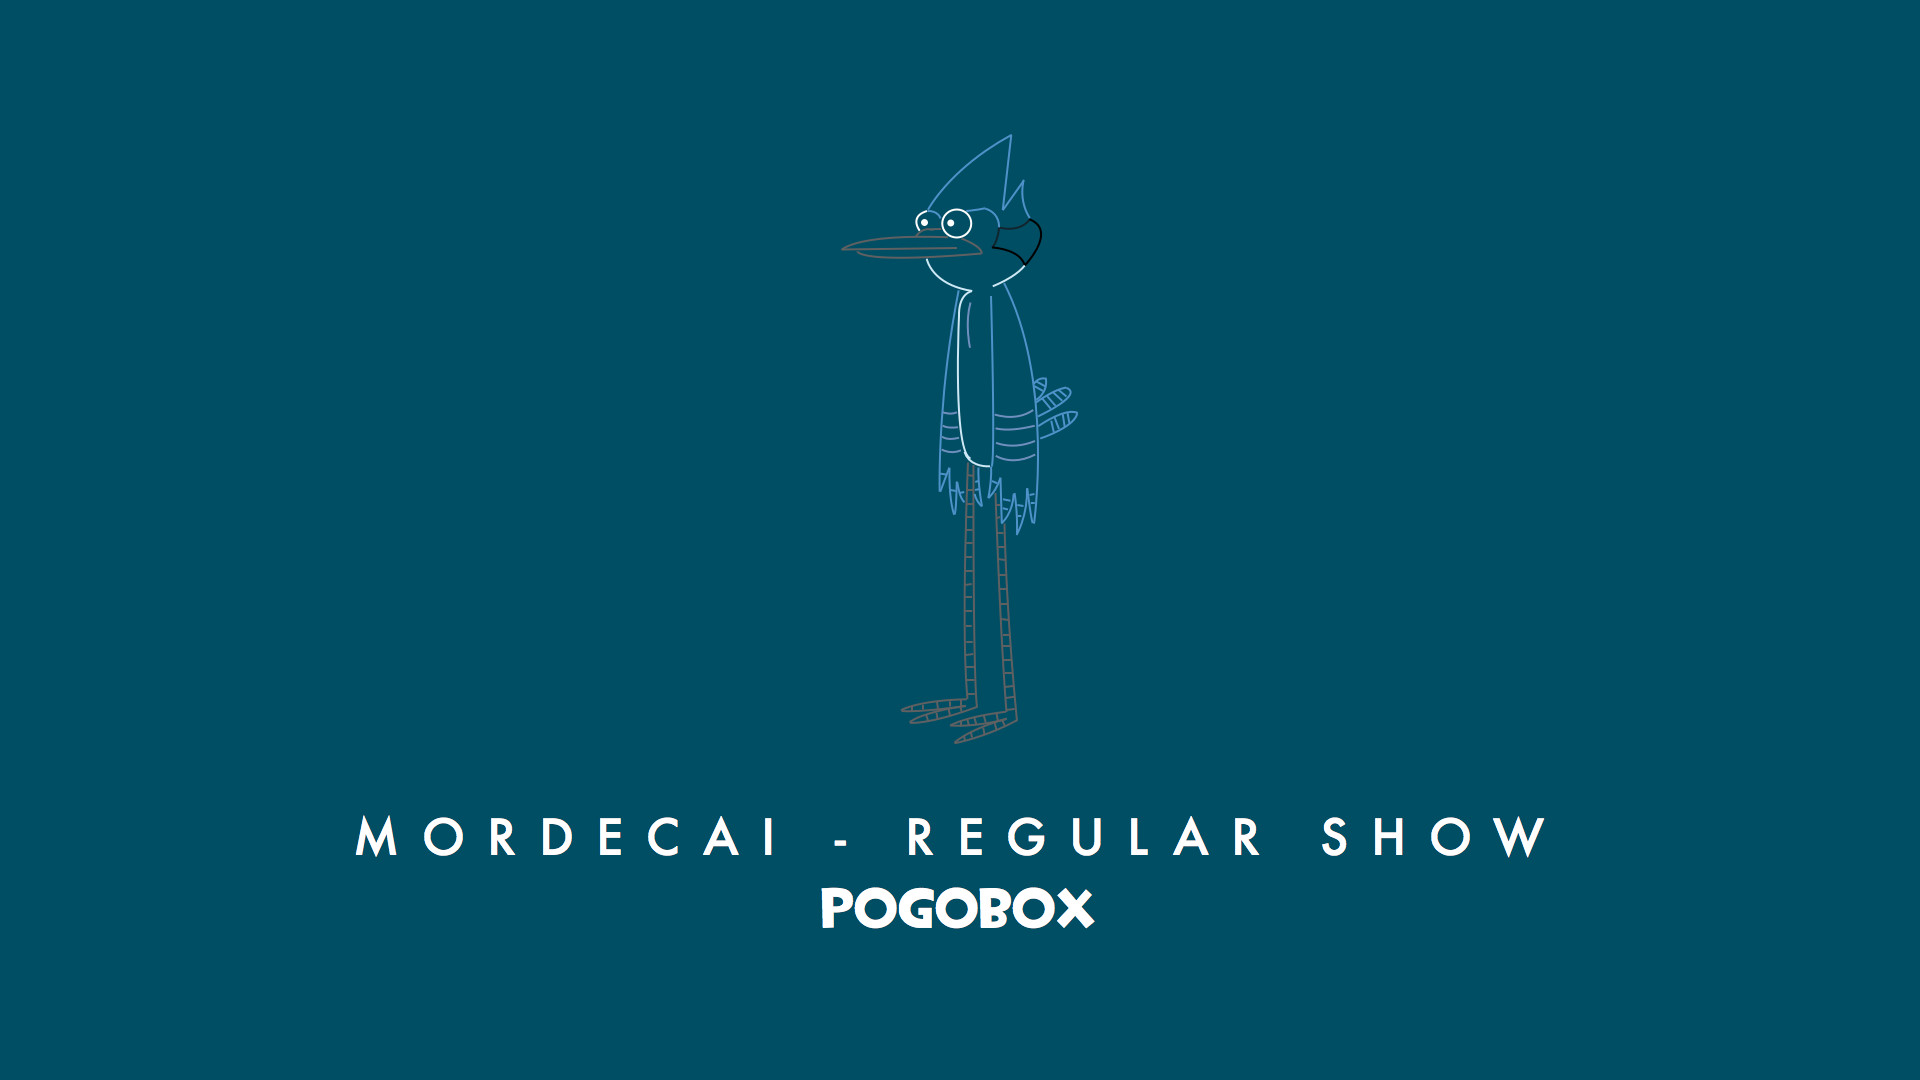 1920x1080 Mordecai - Regular Show